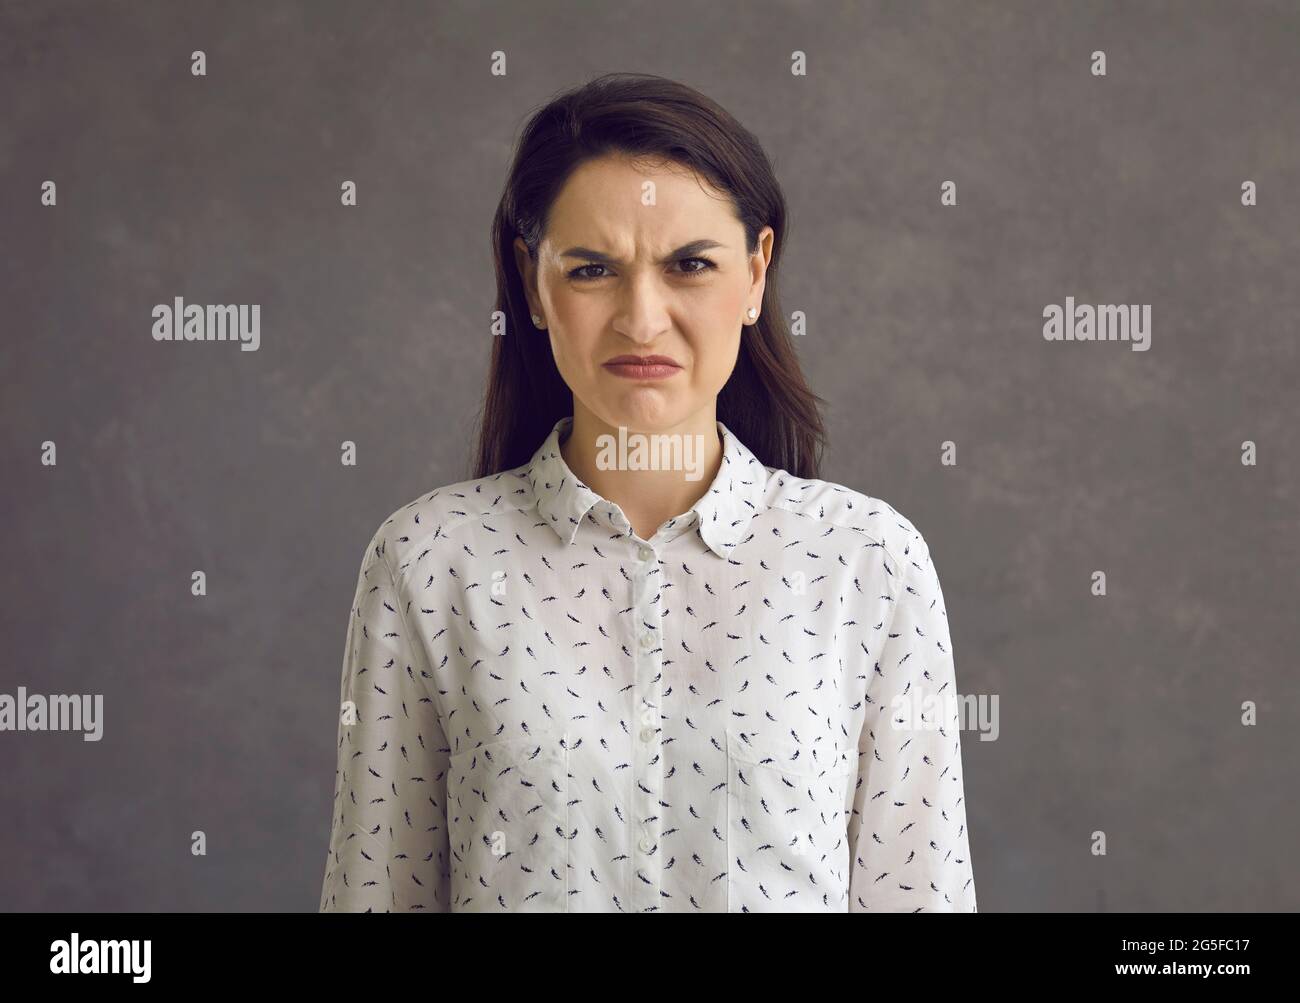 Porträt einer emotionalen jungen Frau mit runzelndem Grimasse, die ihren Ekel und ihre Abneigung zum Ausdruck bringt. Stockfoto